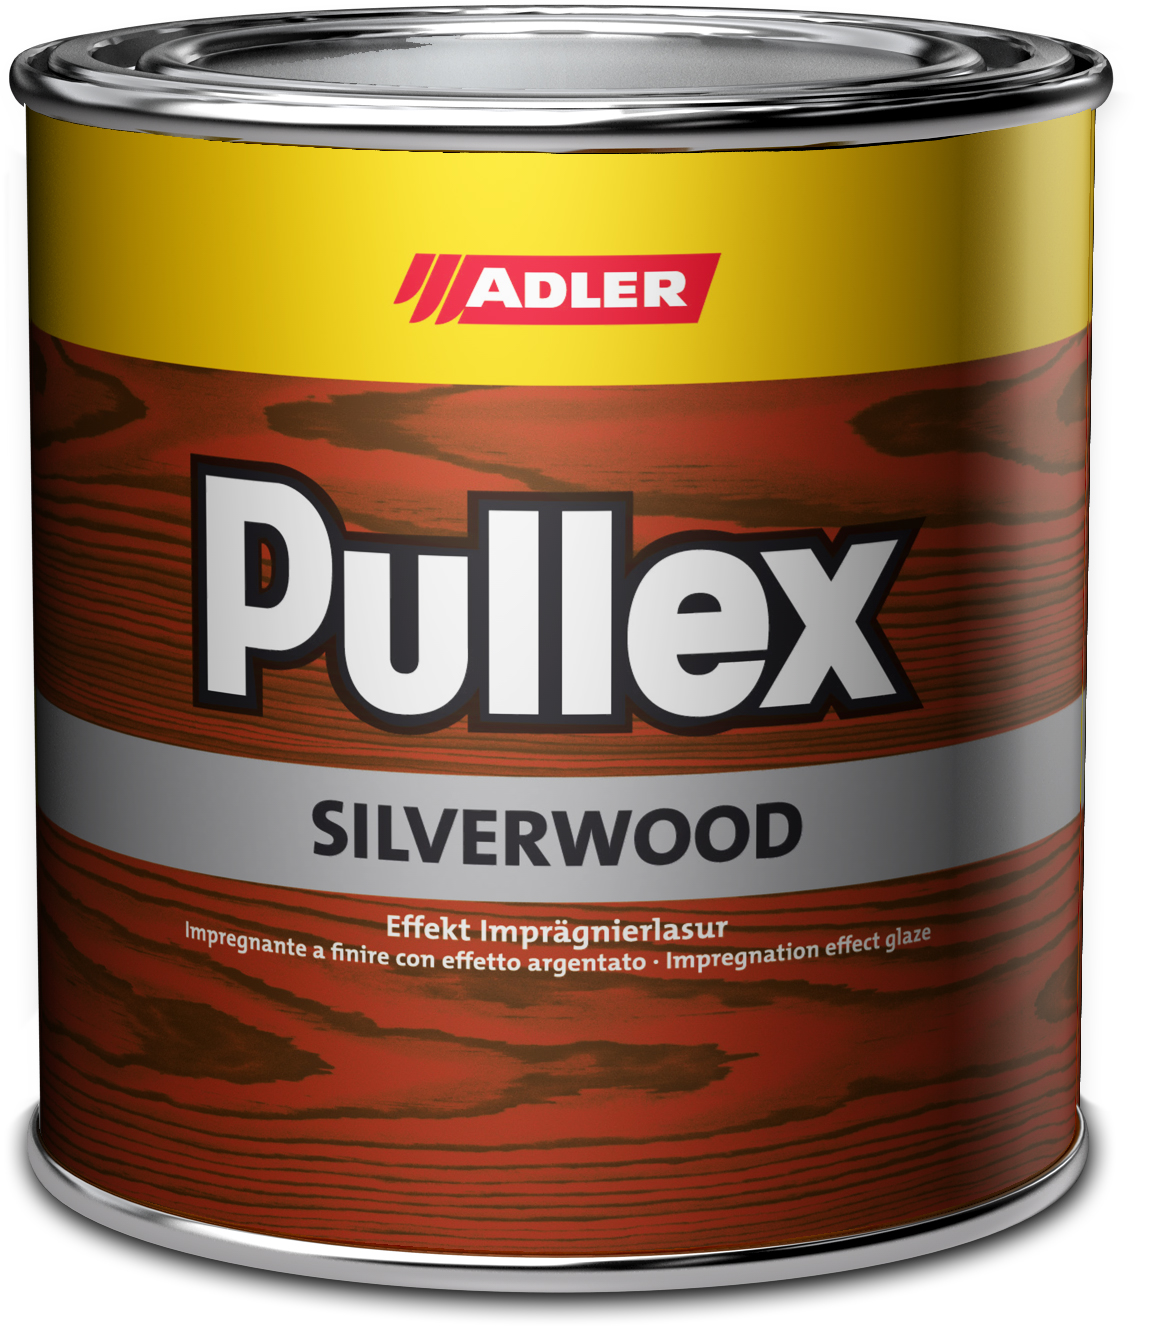 Adler Pullex Silverwood - efektná lazúra do exteriéru vytvárajúca vzhľad starého dreva 20 l fichte hell geflämnt - smrek svetlý žíhaný